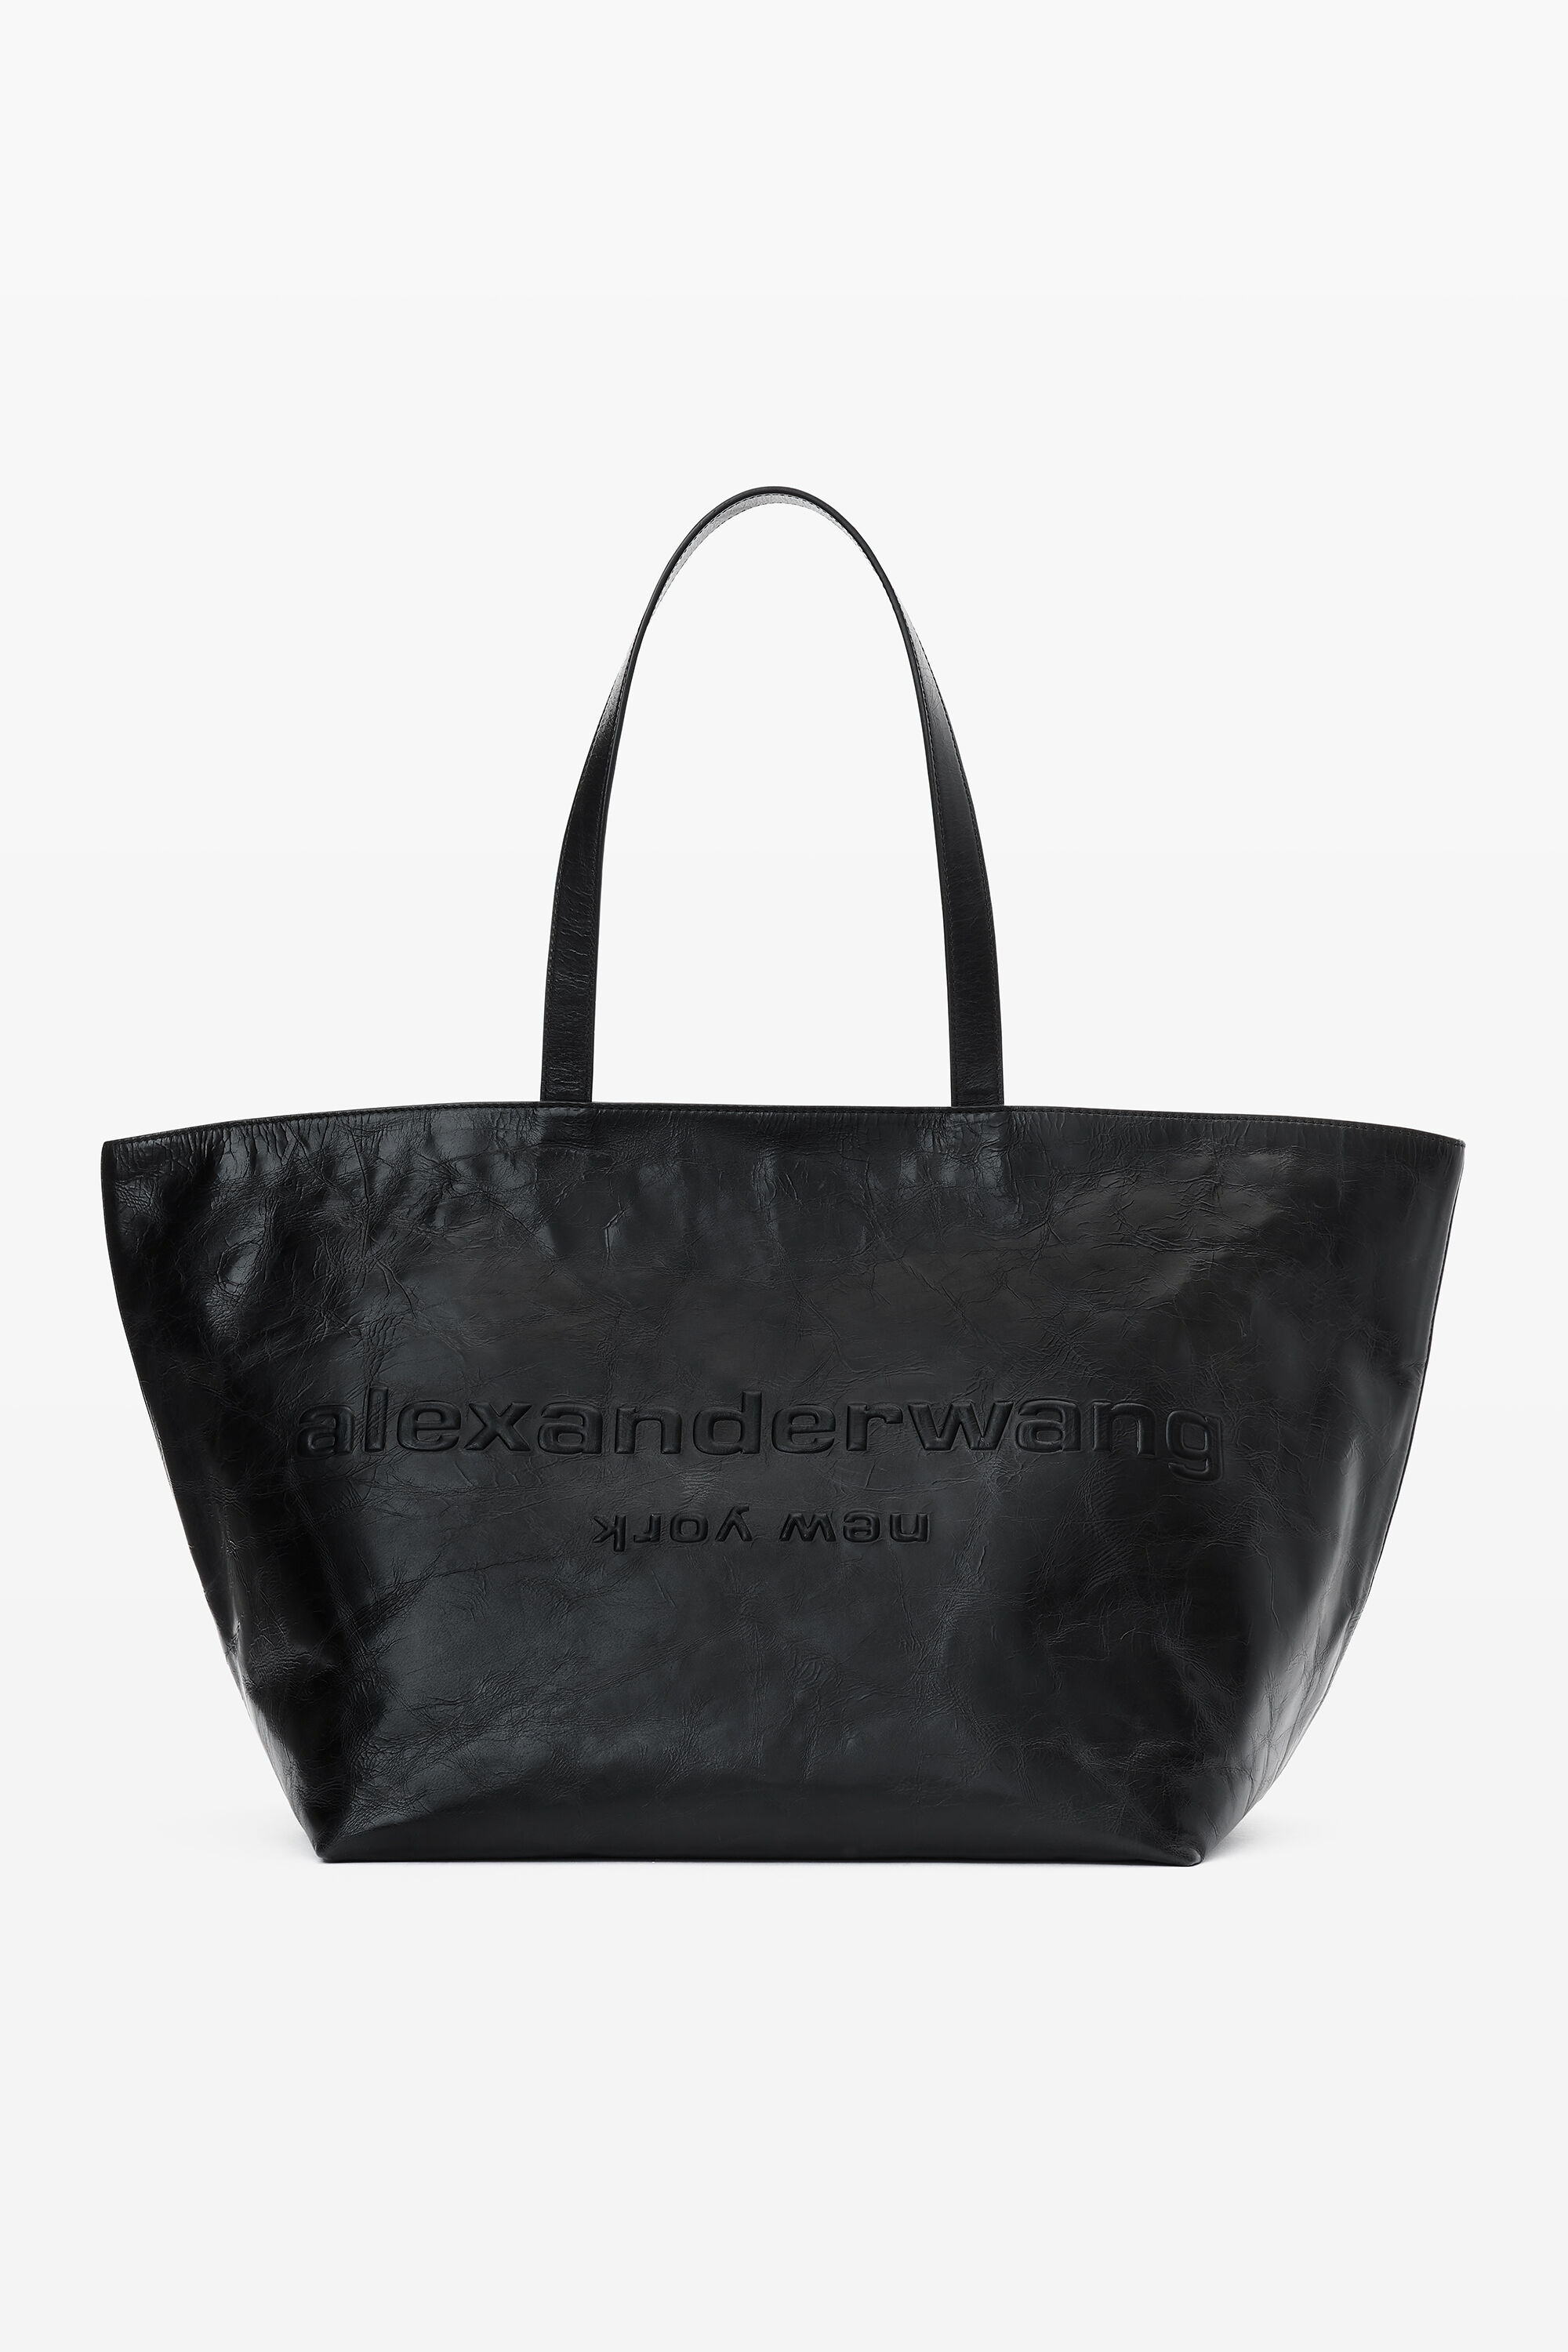 alexanderwang Punch Leather Tote Bag BLACK - alexanderwang 